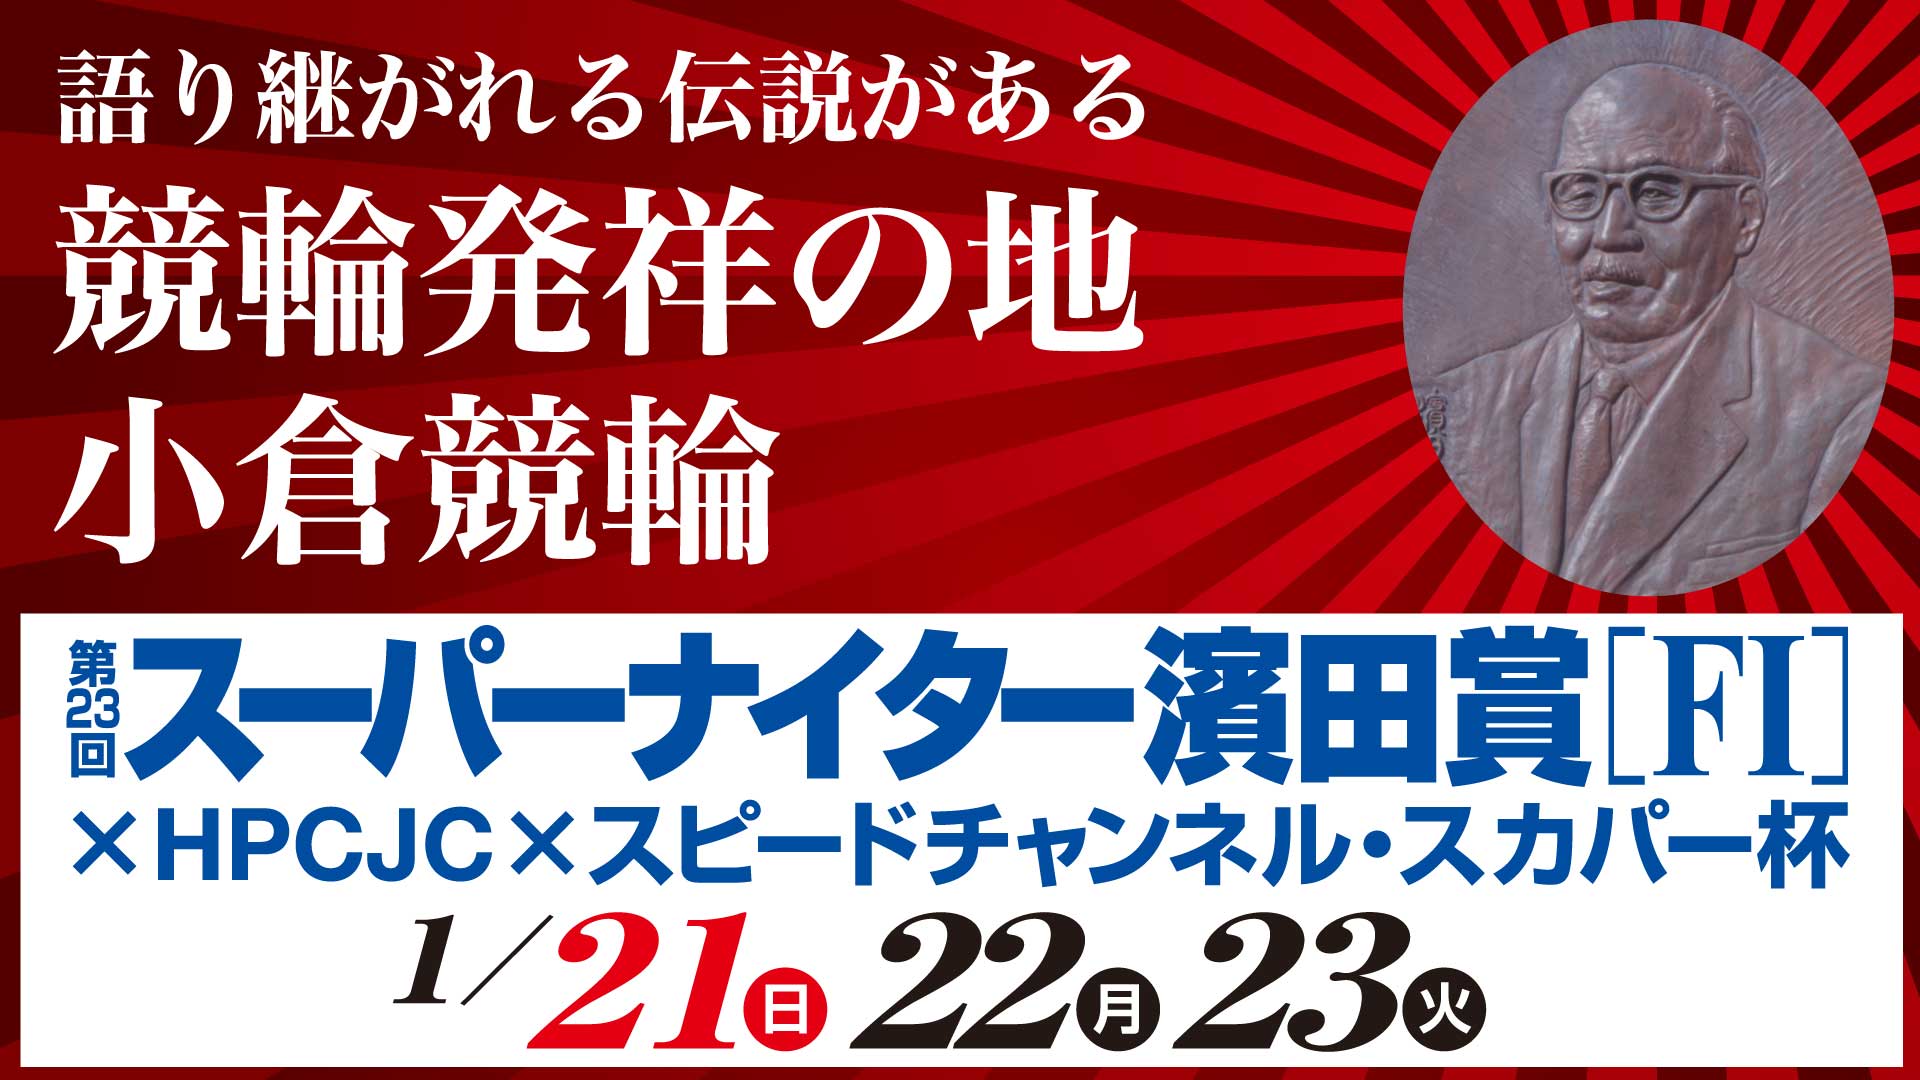 第23回スーパーナイター濱田賞×HPCJC×スピードチャンネル・スカパー!杯